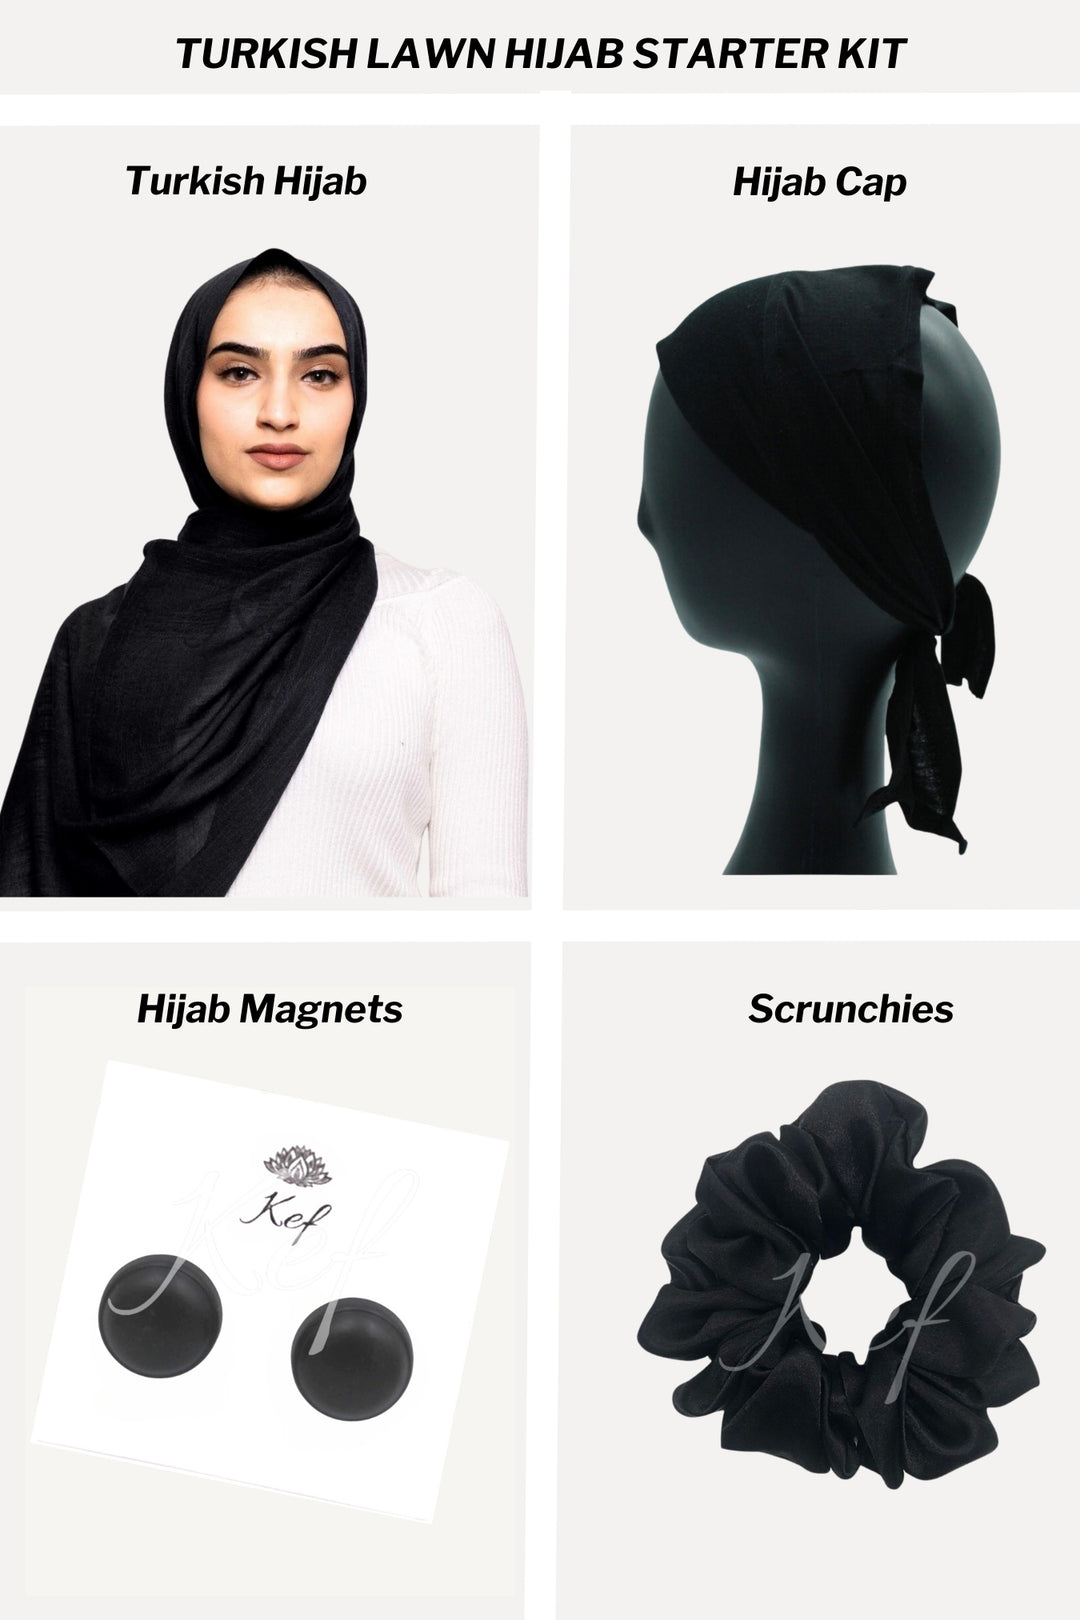 Turkish Lawn Hijab Starter Kit